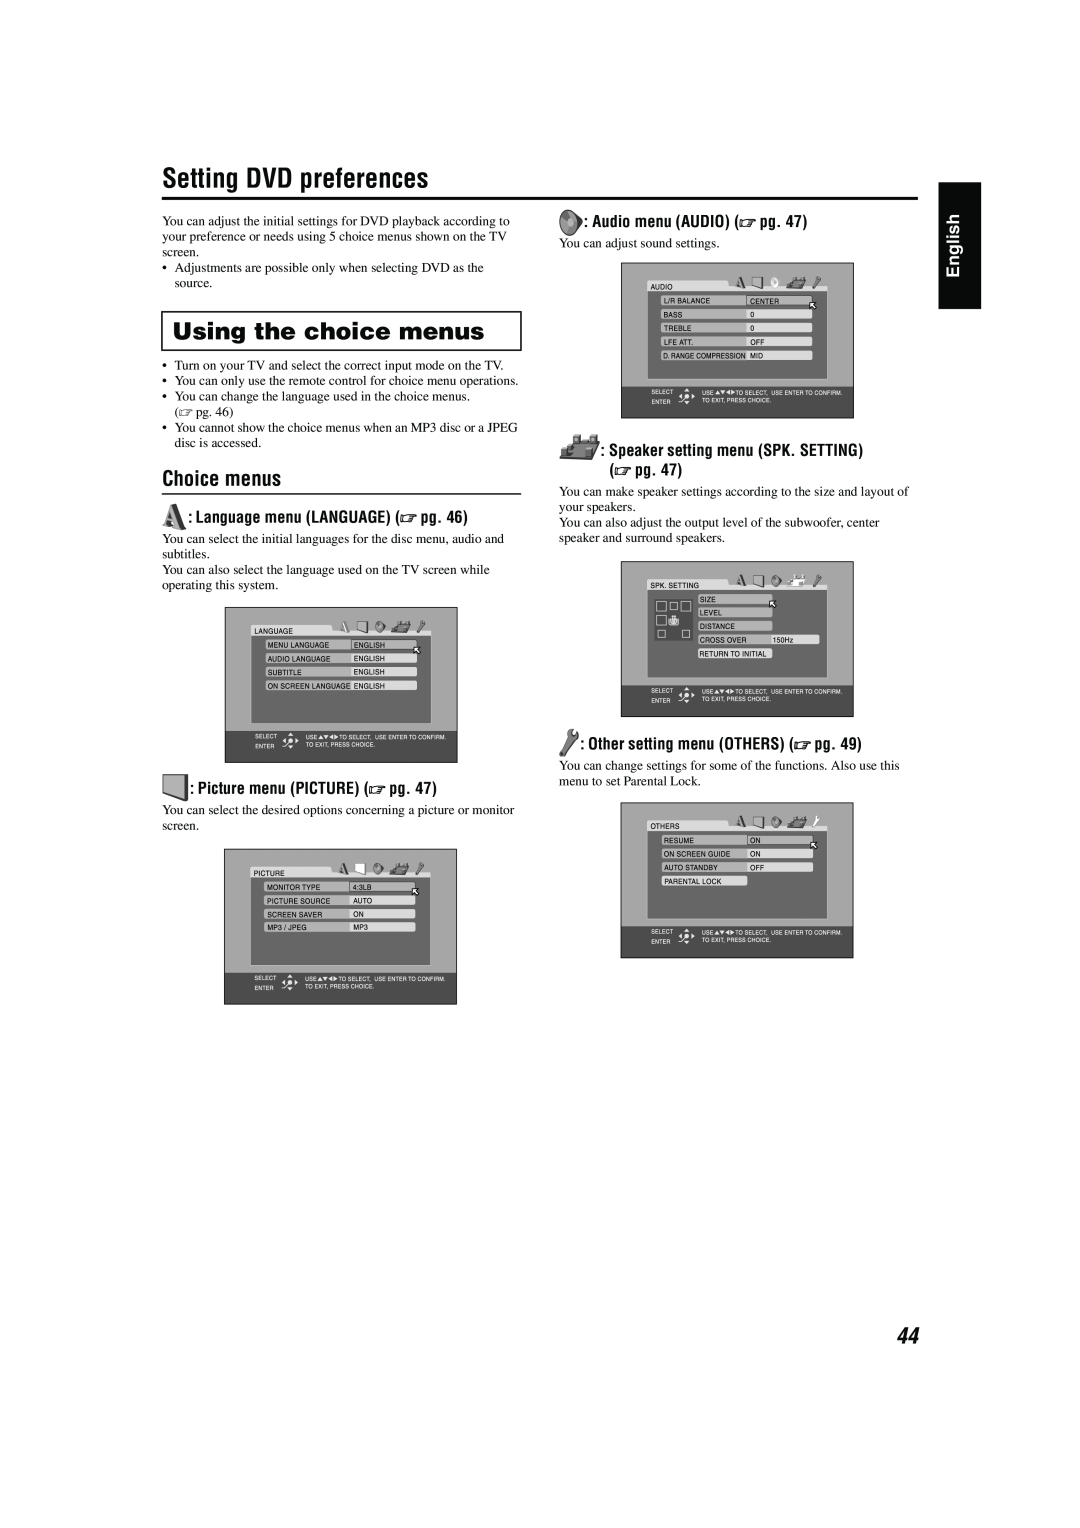 JVC TH-M42 manual Setting DVD preferences, Using the choice menus, Choice menus, English, Language menu LANGUAGE A pg 